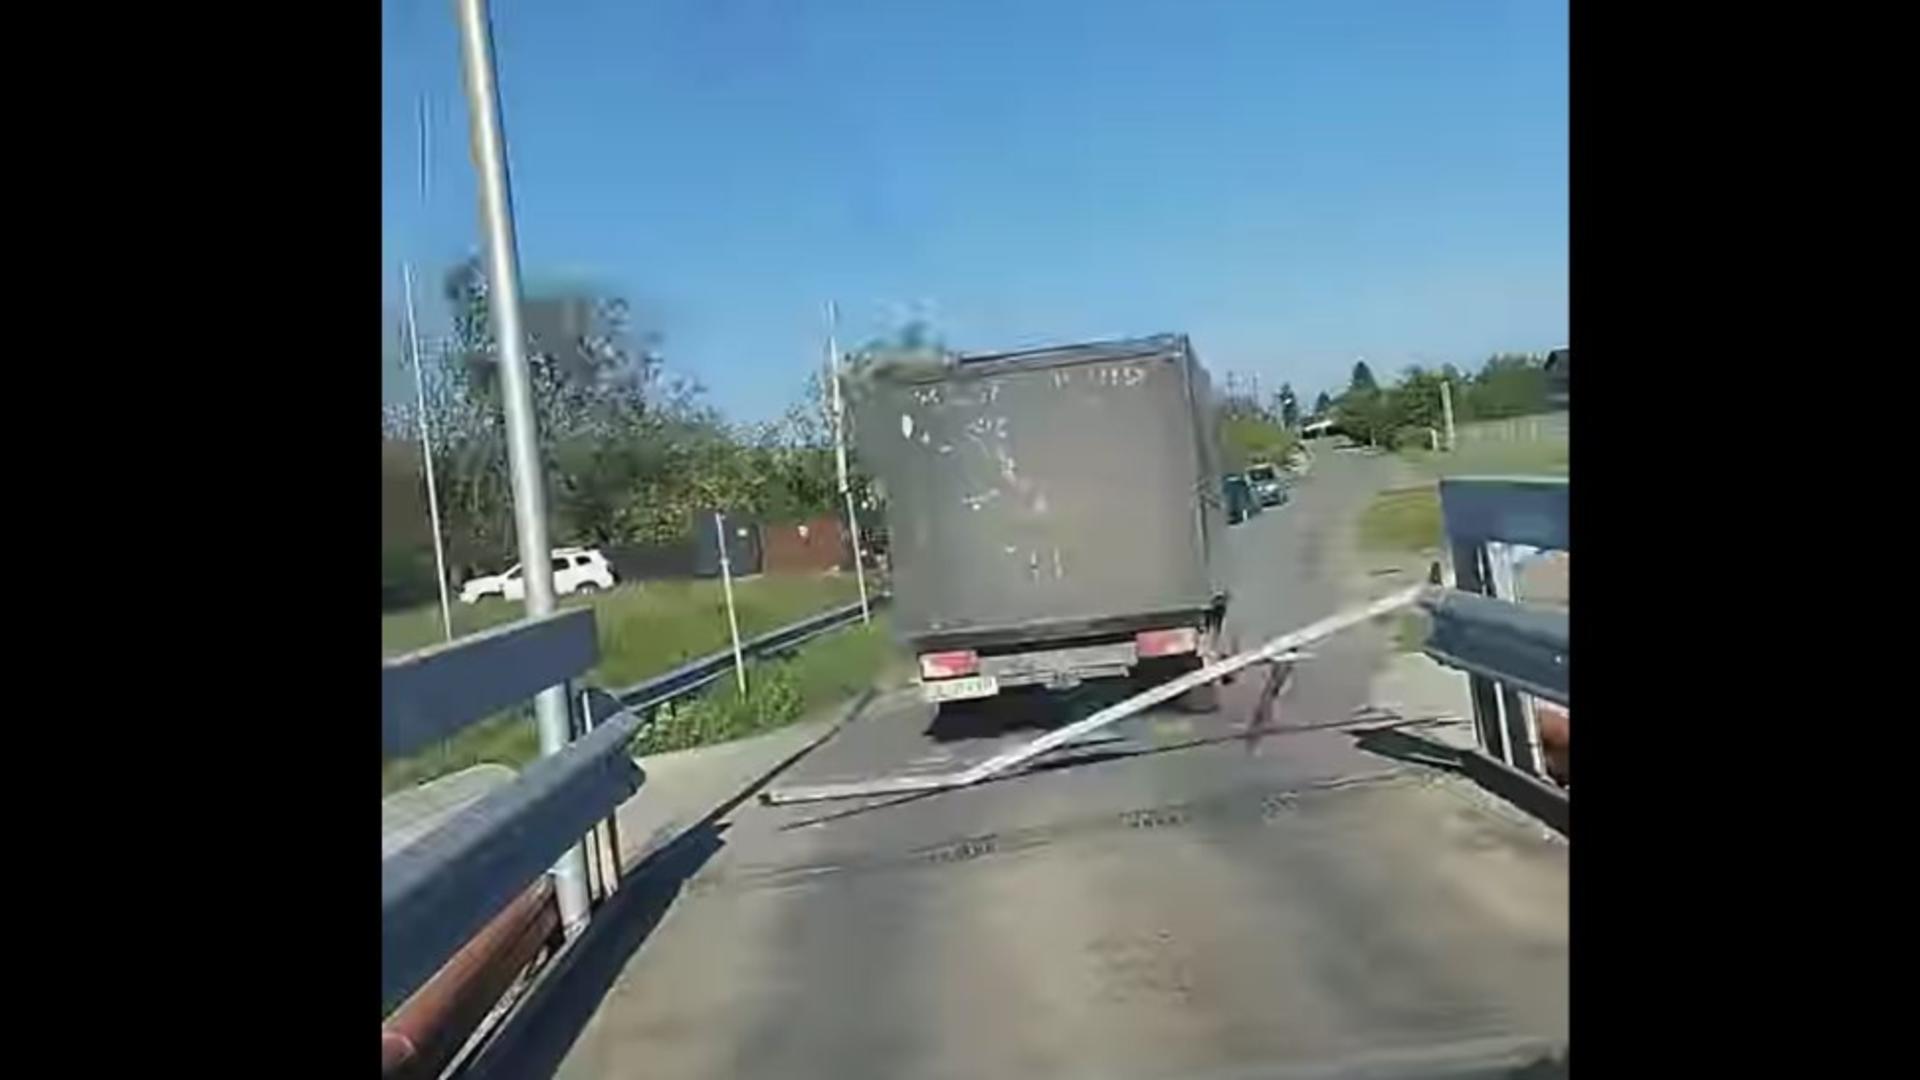 Momentul în care șoferul dărâmă poarta de gabarit a podului. Foto/Captură video